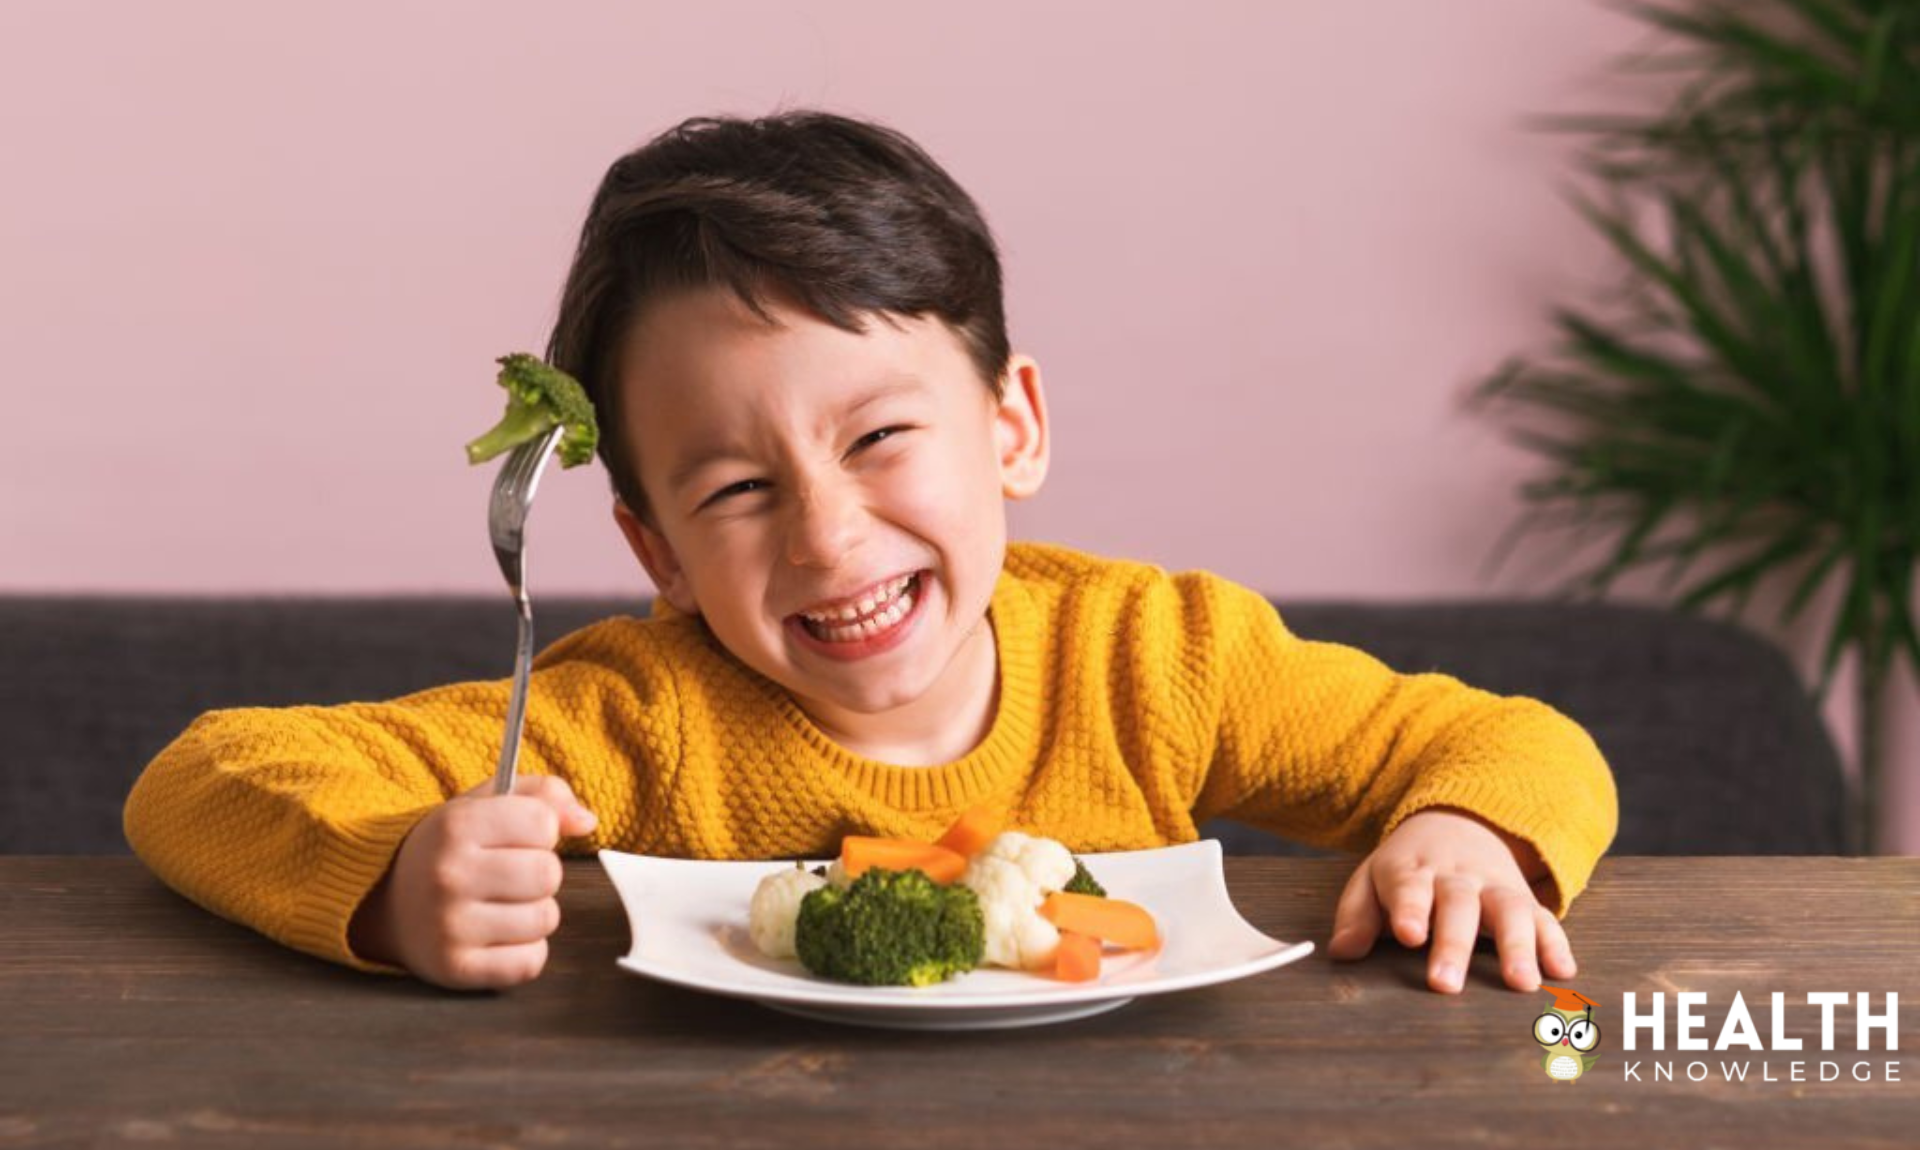 Children's nutrition